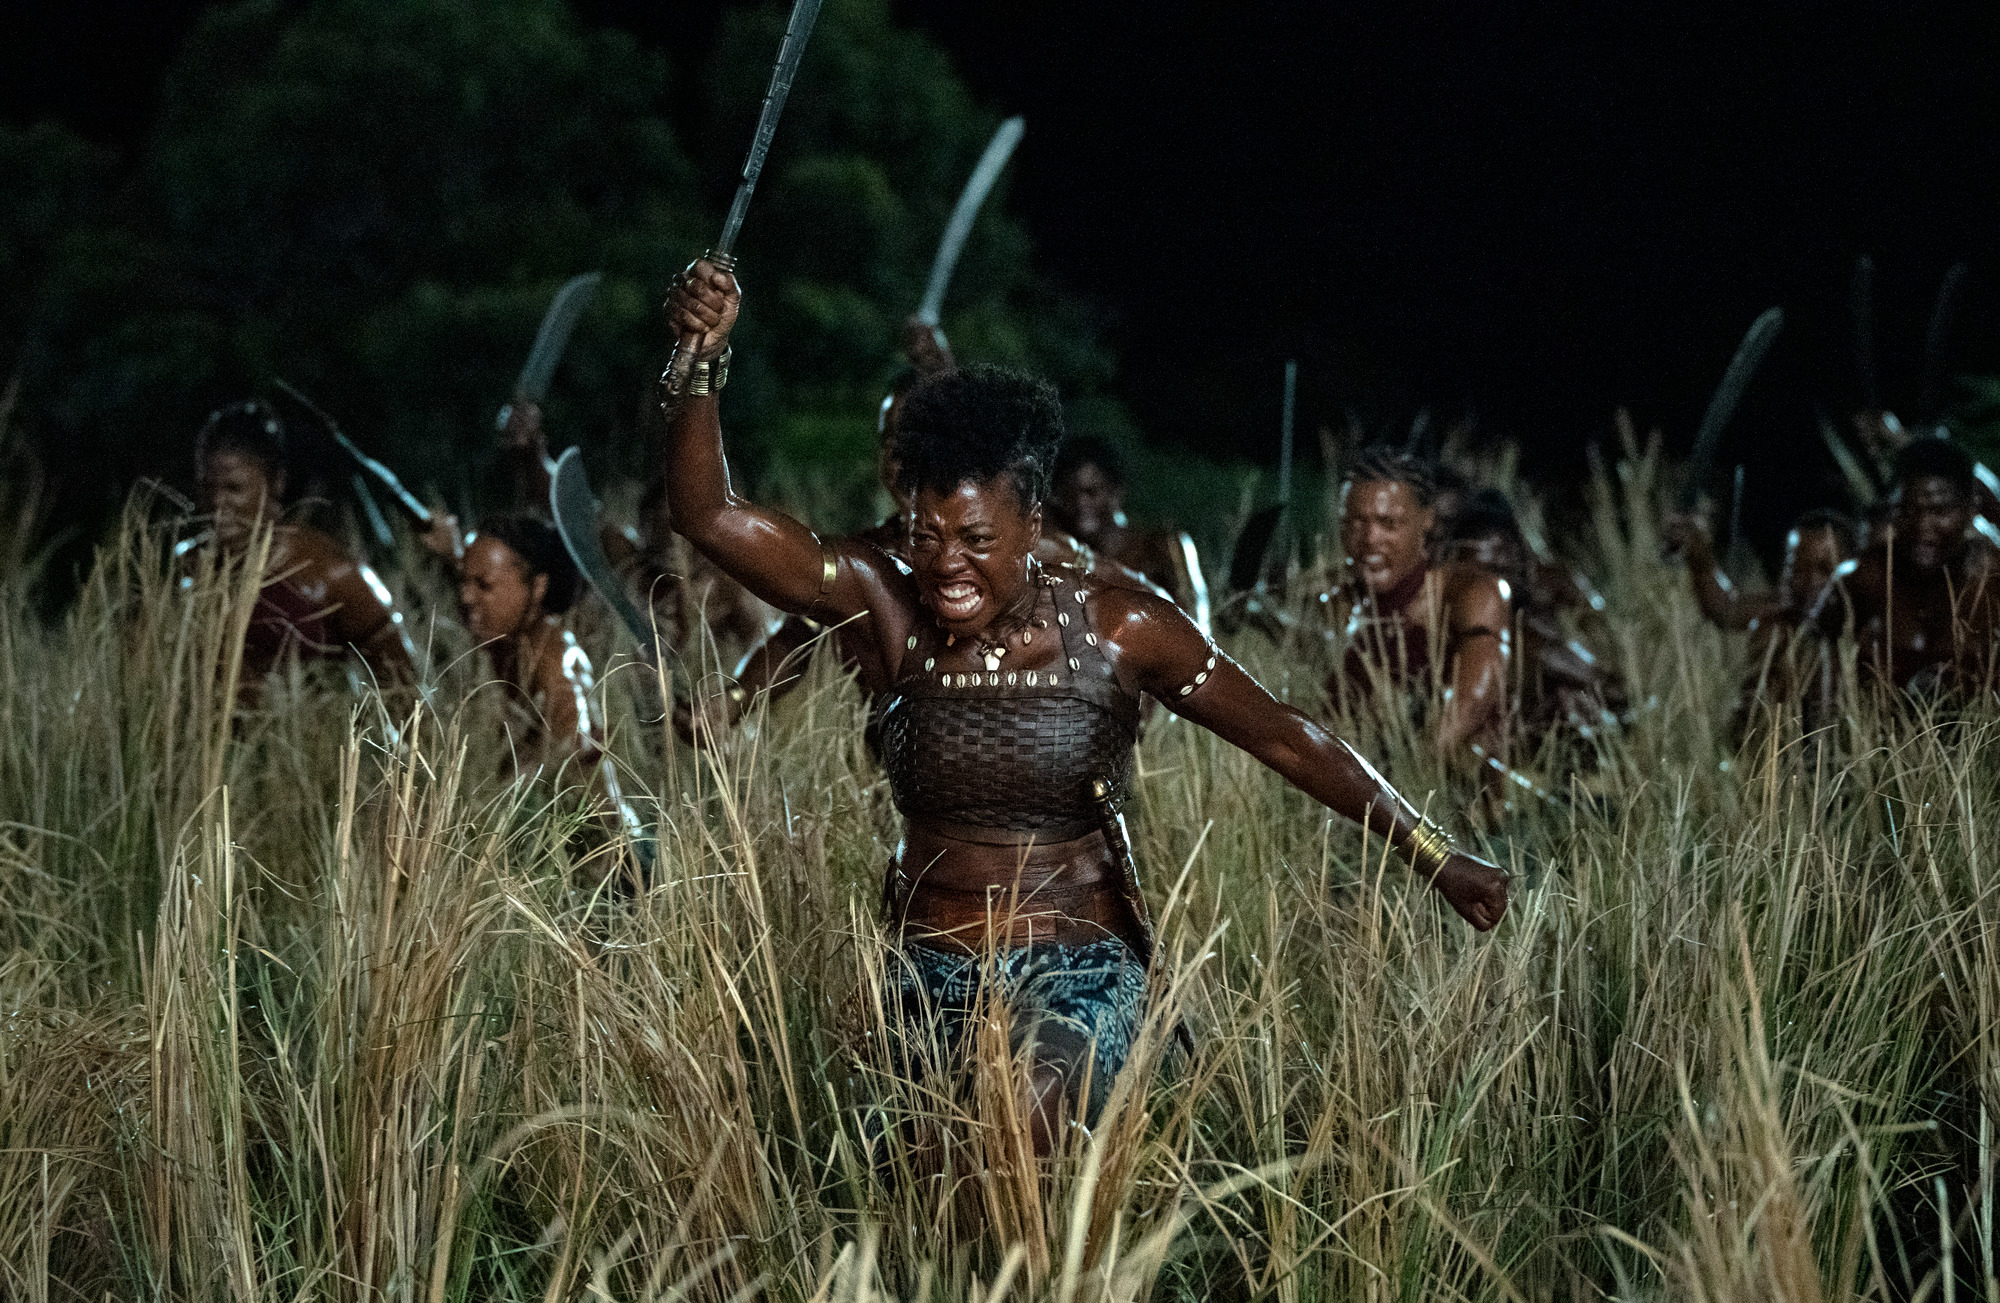 Cena do filme A Mulher Rei (2022), Nanisca (Viola Davis), vestida com um top e uma saia em tons de verde, sai com seu grupo de guerreiras de um matagal. Estão todas armadas de facões e adornadas com colares e braceletes típicos